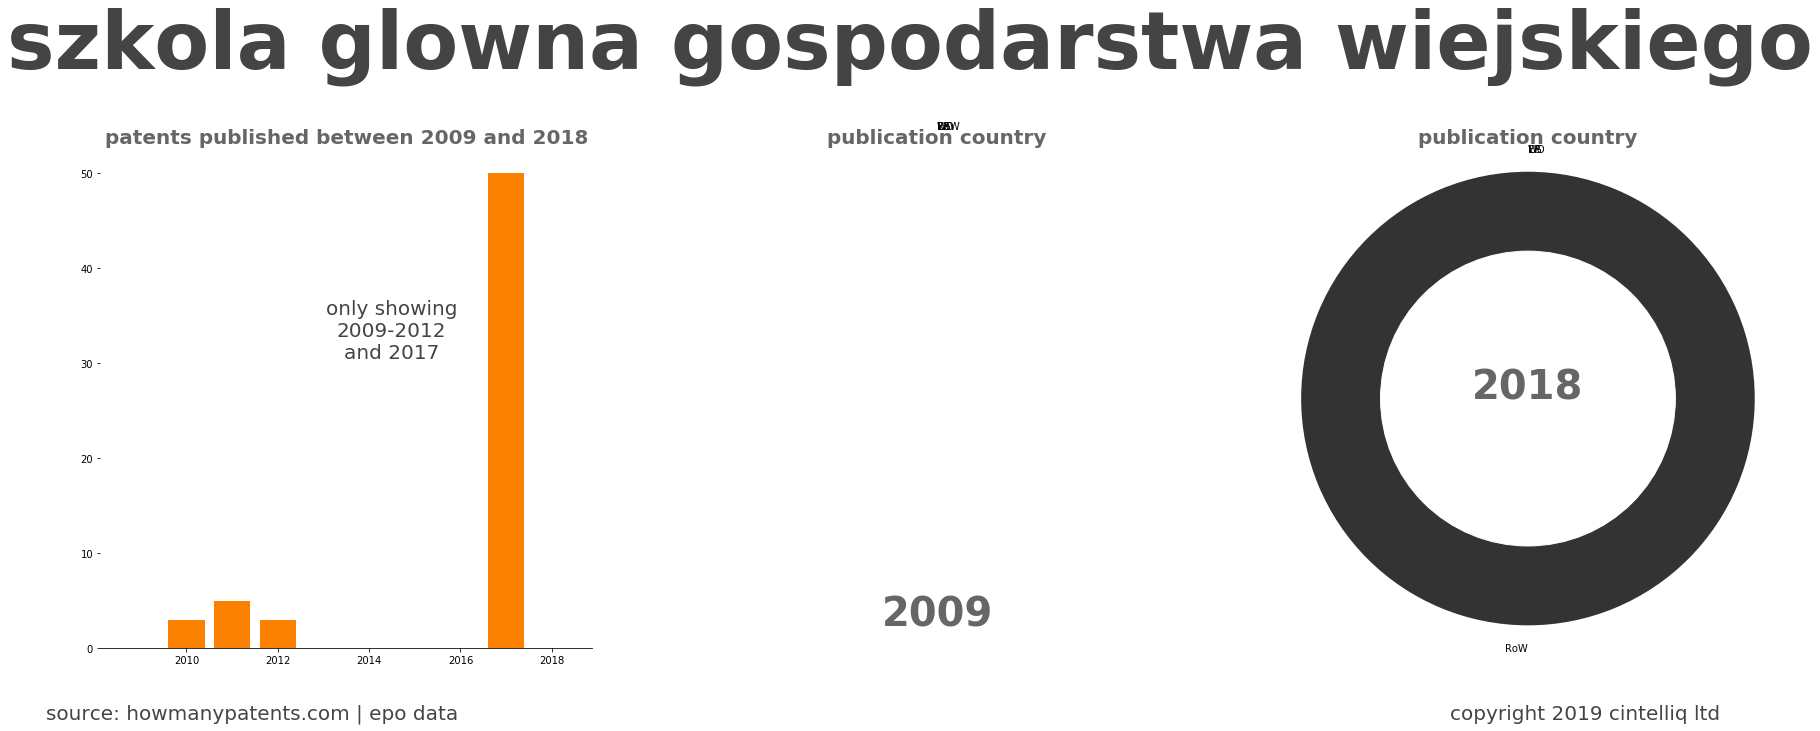 summary of patents for Szkola Glowna Gospodarstwa Wiejskiego